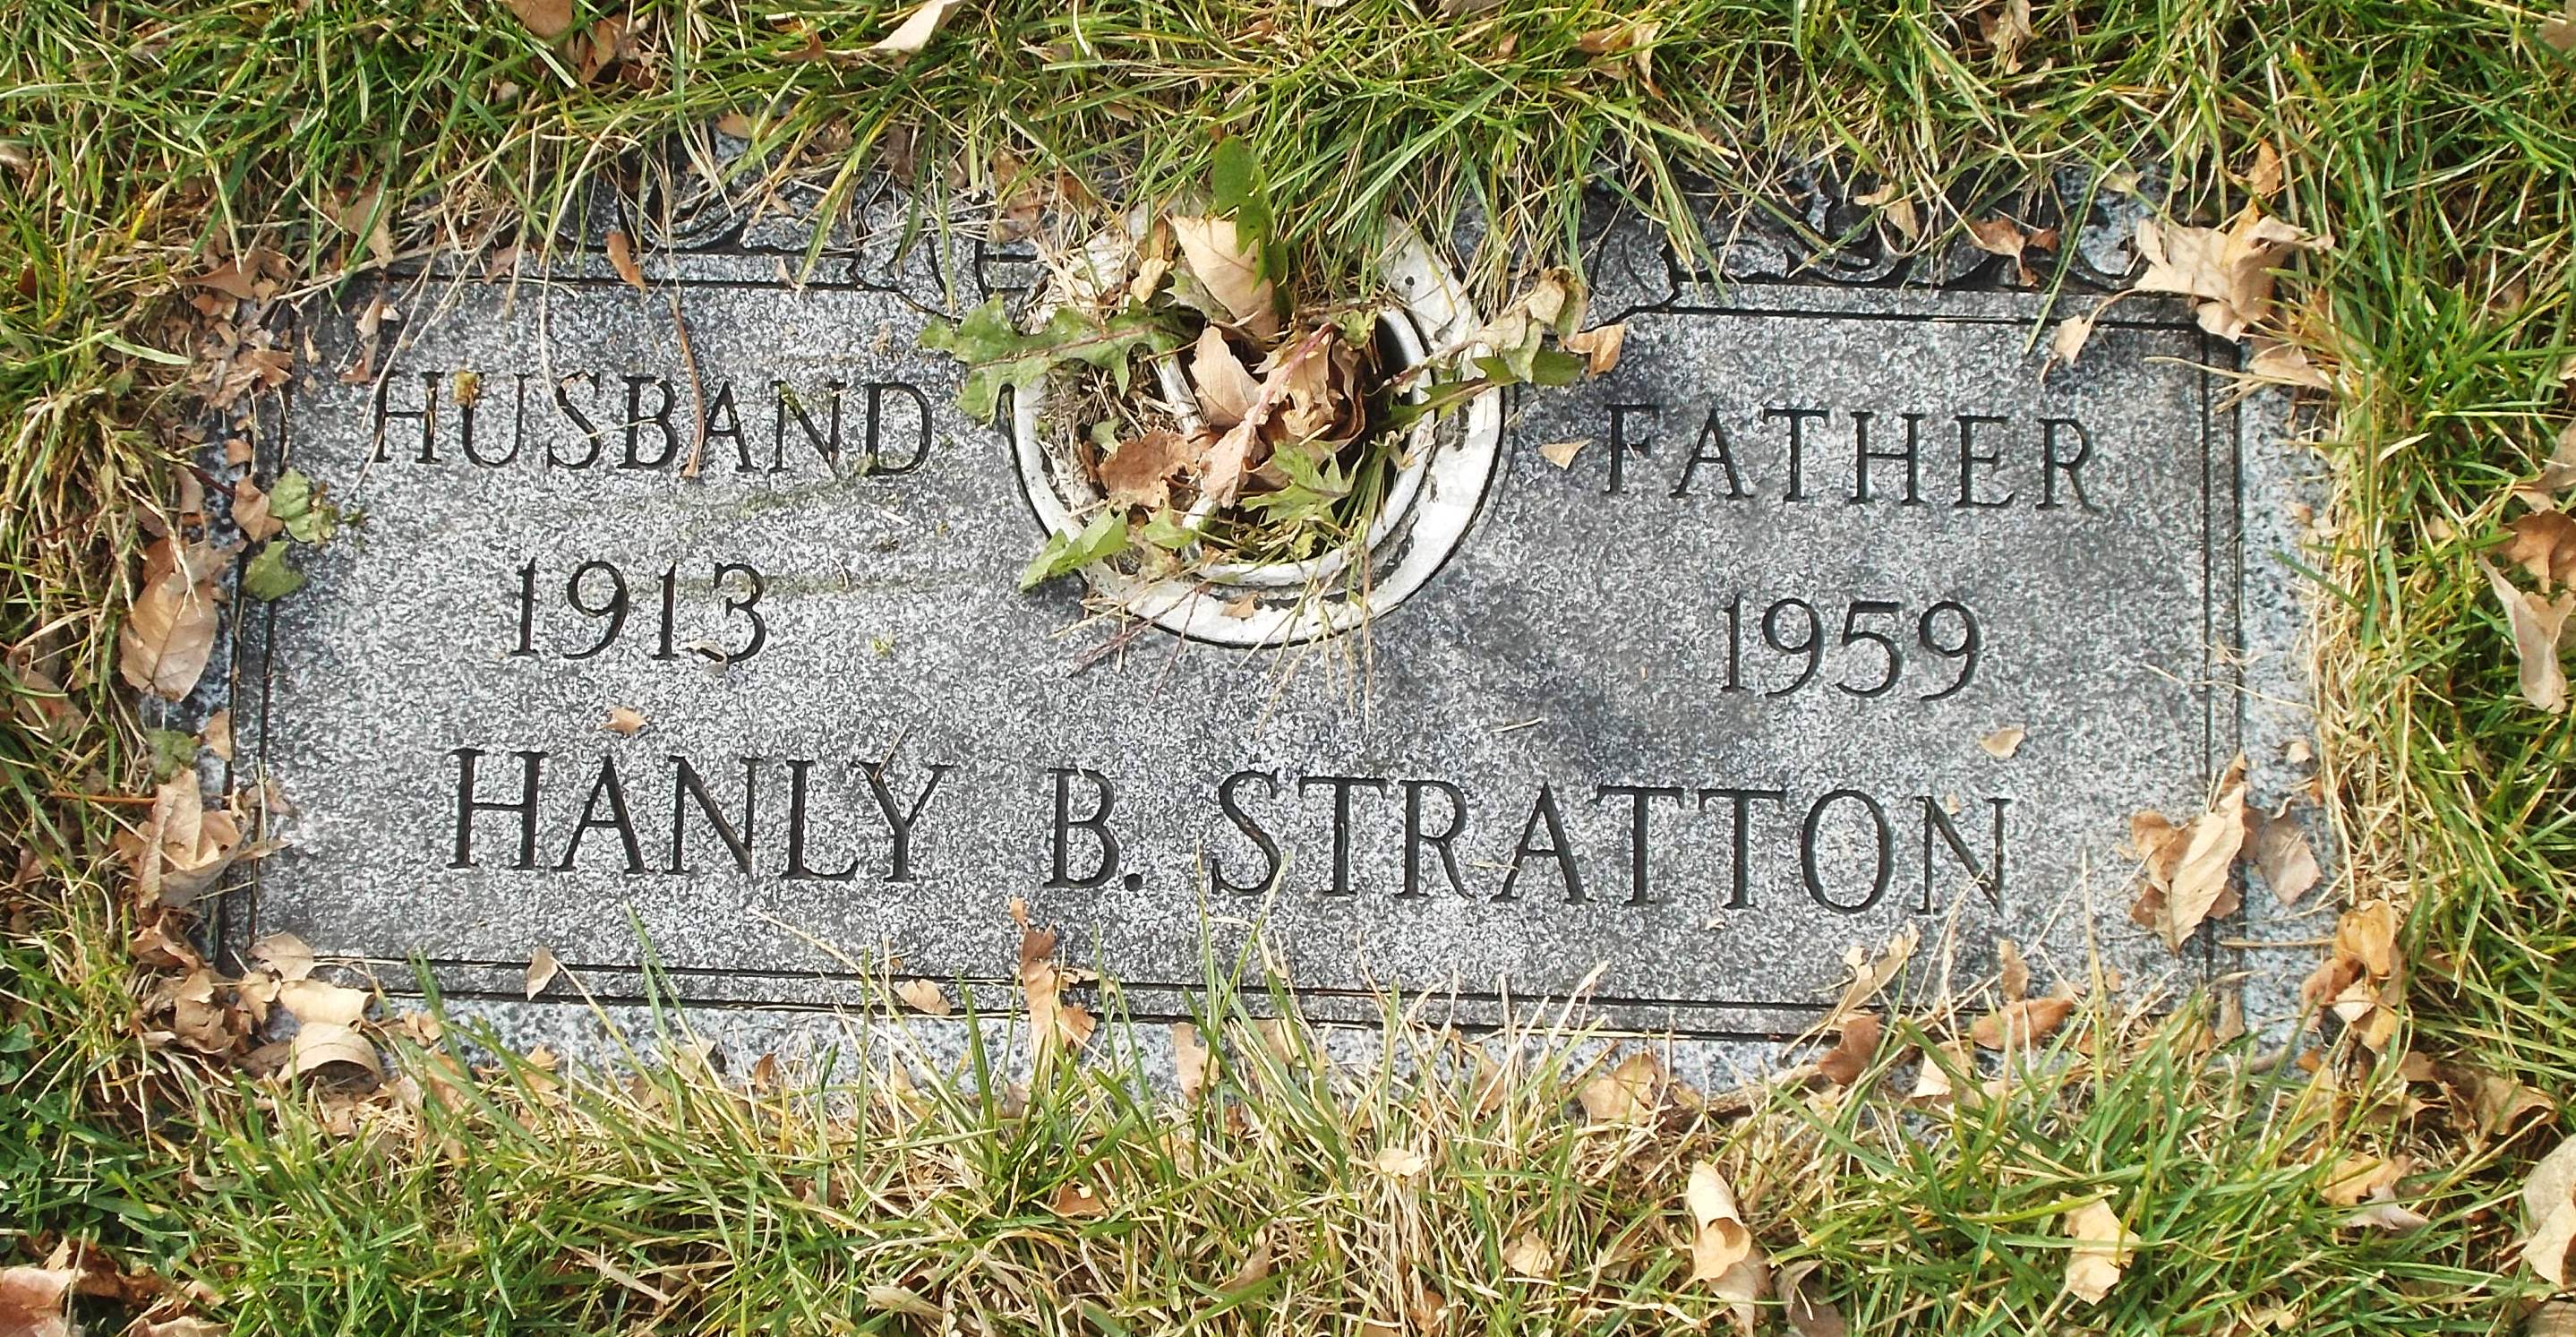 Hanly B Stratton